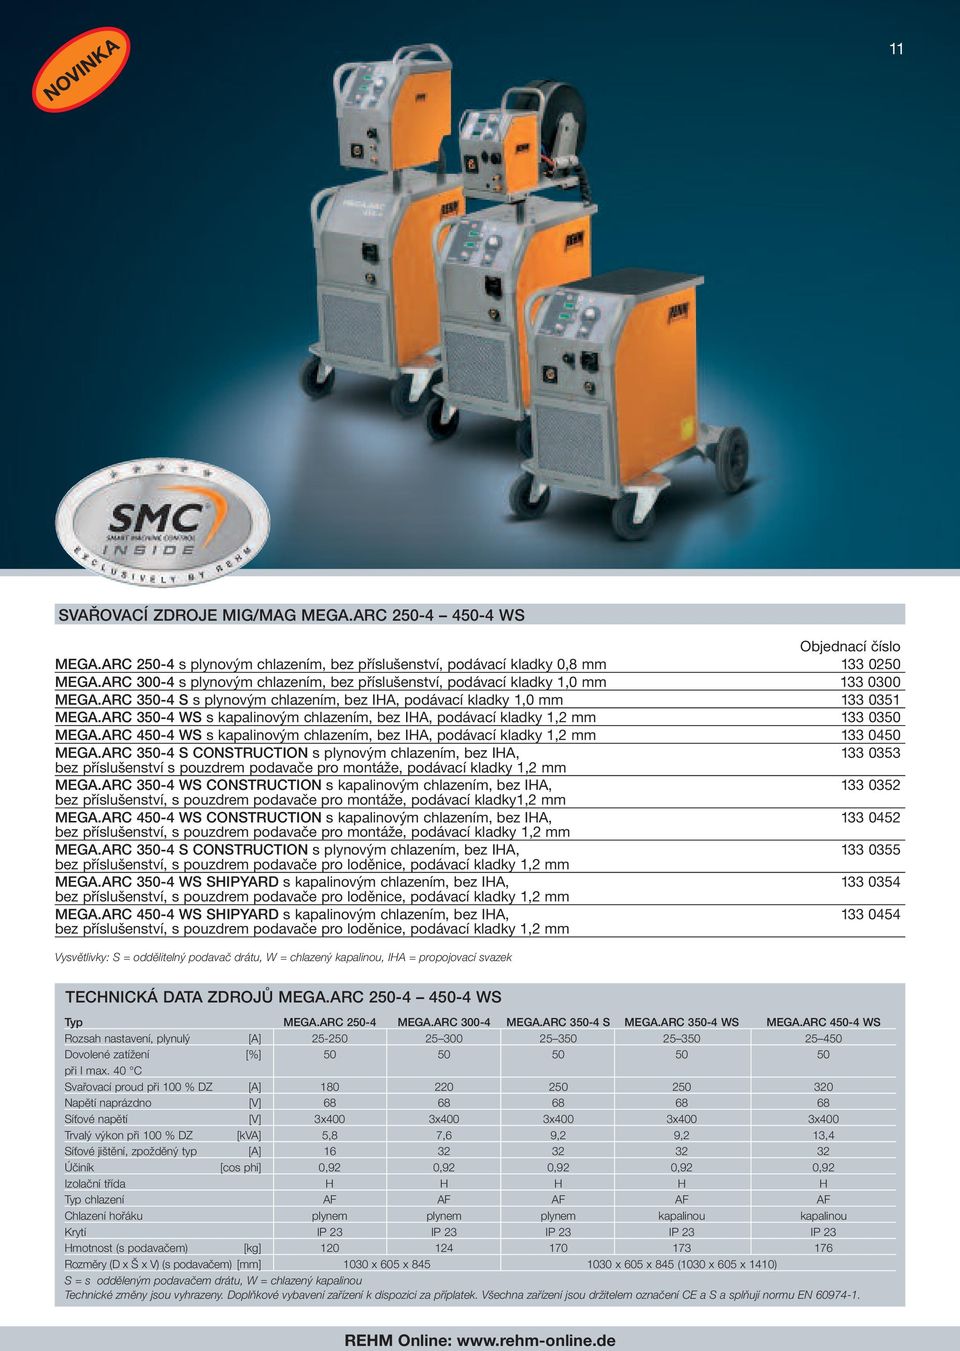 ARC 350-4 WS s kapalinovým chlazením, bez IHA, podávací kladky 1,2 mm 133 0350 MEGA.ARC 450-4 WS s kapalinovým chlazením, bez IHA, podávací kladky 1,2 mm 133 0450 MEGA.